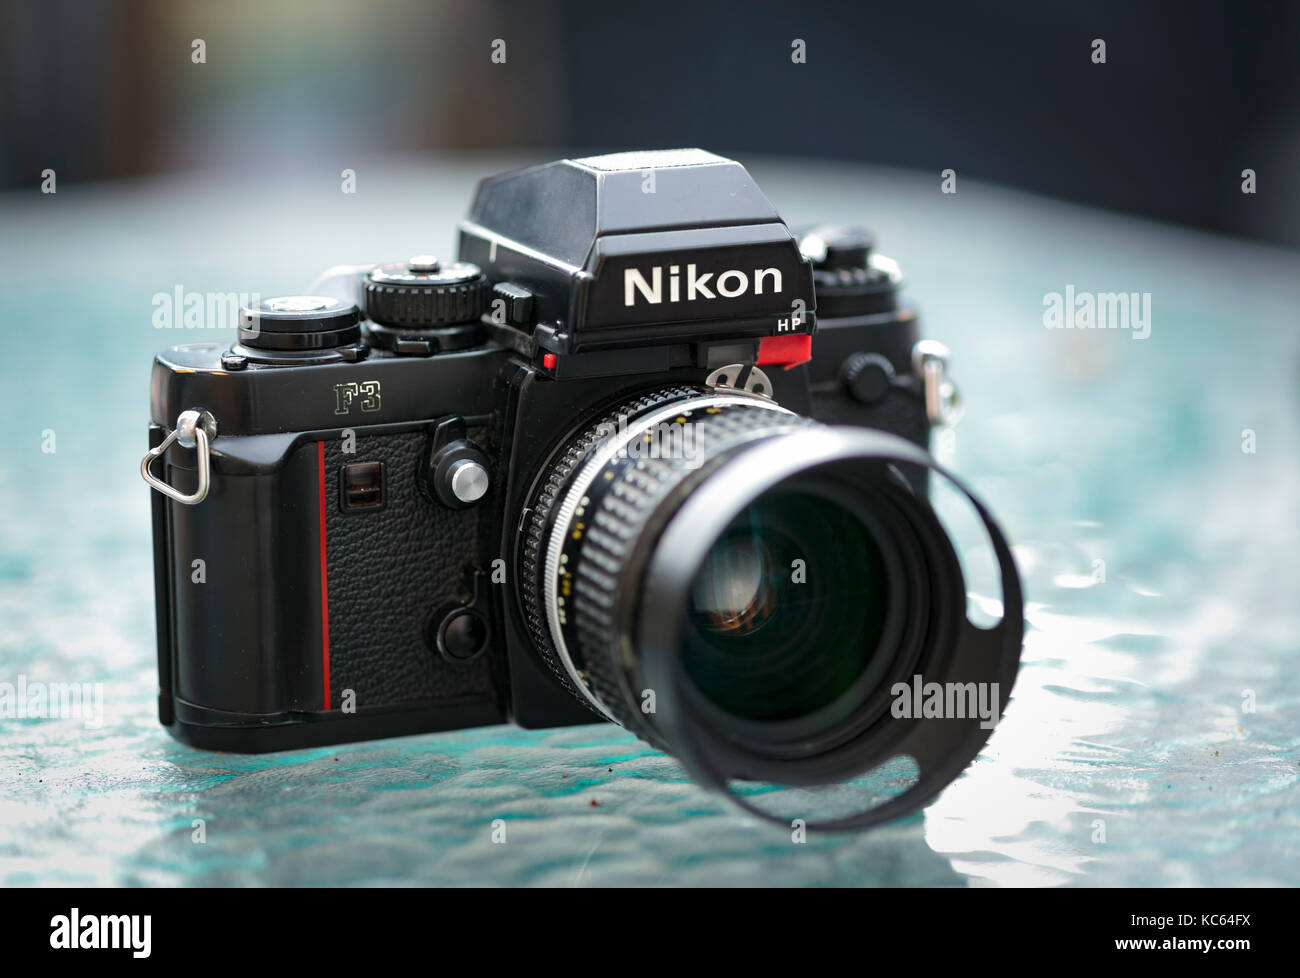 Nikon F3 reflex a lente singola 35mm Pellicola professionale fotocamera, lanciata per la prima volta nel 1980 e rimase in produzione fino al 2001. Foto Stock